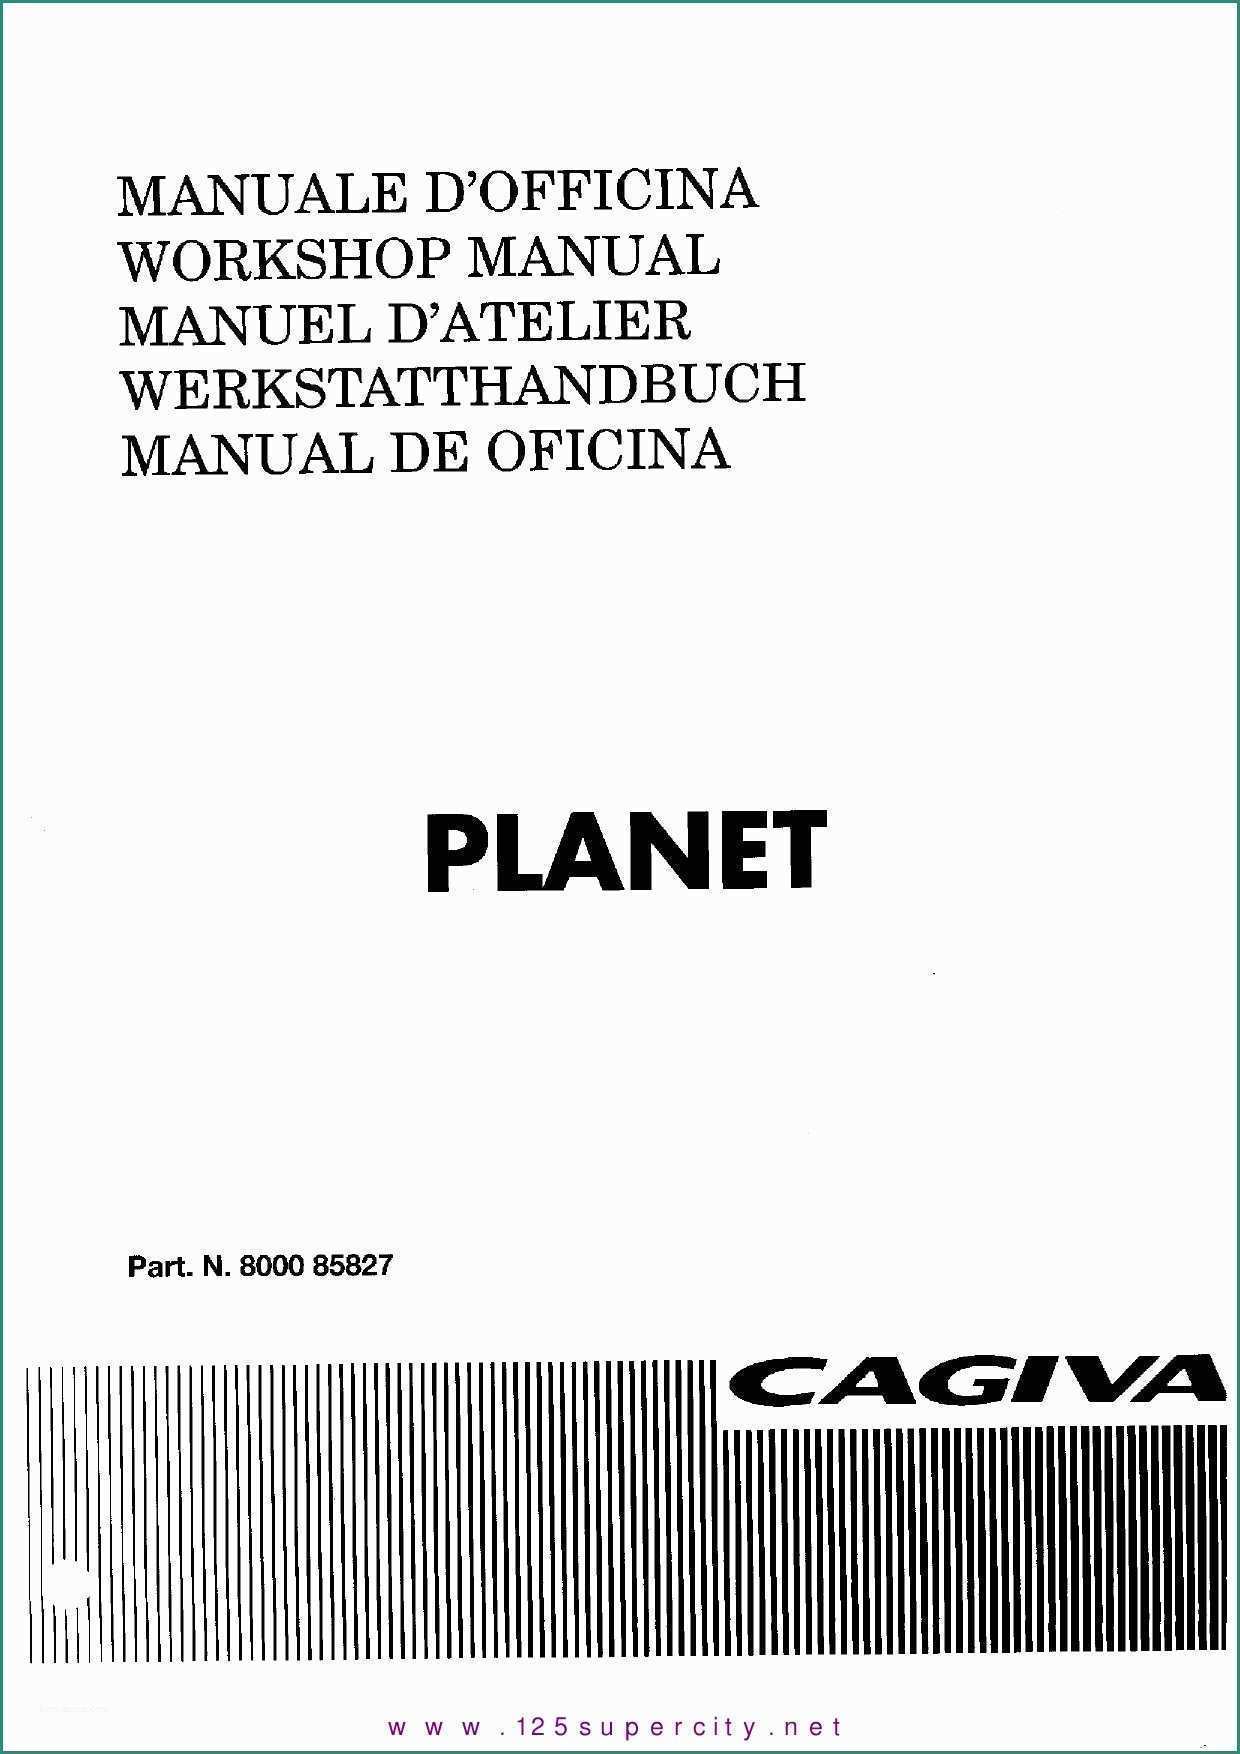 Serbatoio Acqua Litri E Manual Cagiva Planet by Christ Cfouq issuu